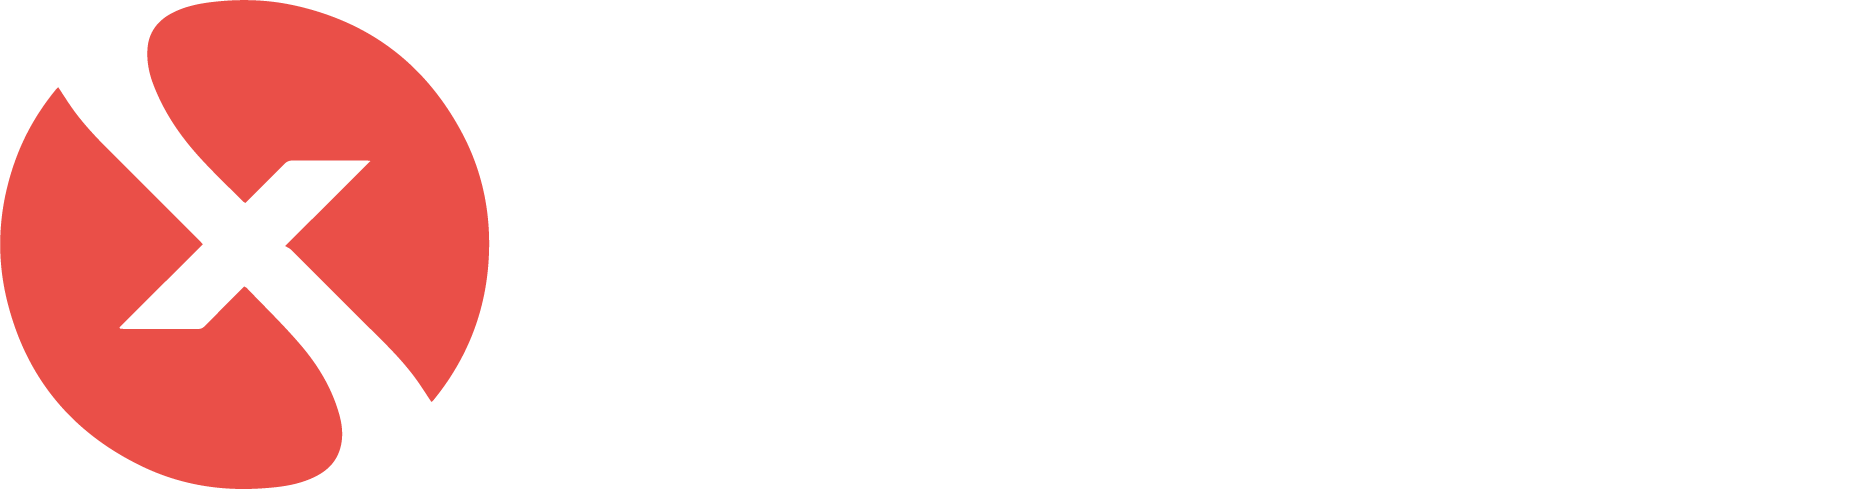 xportturk_logo_white